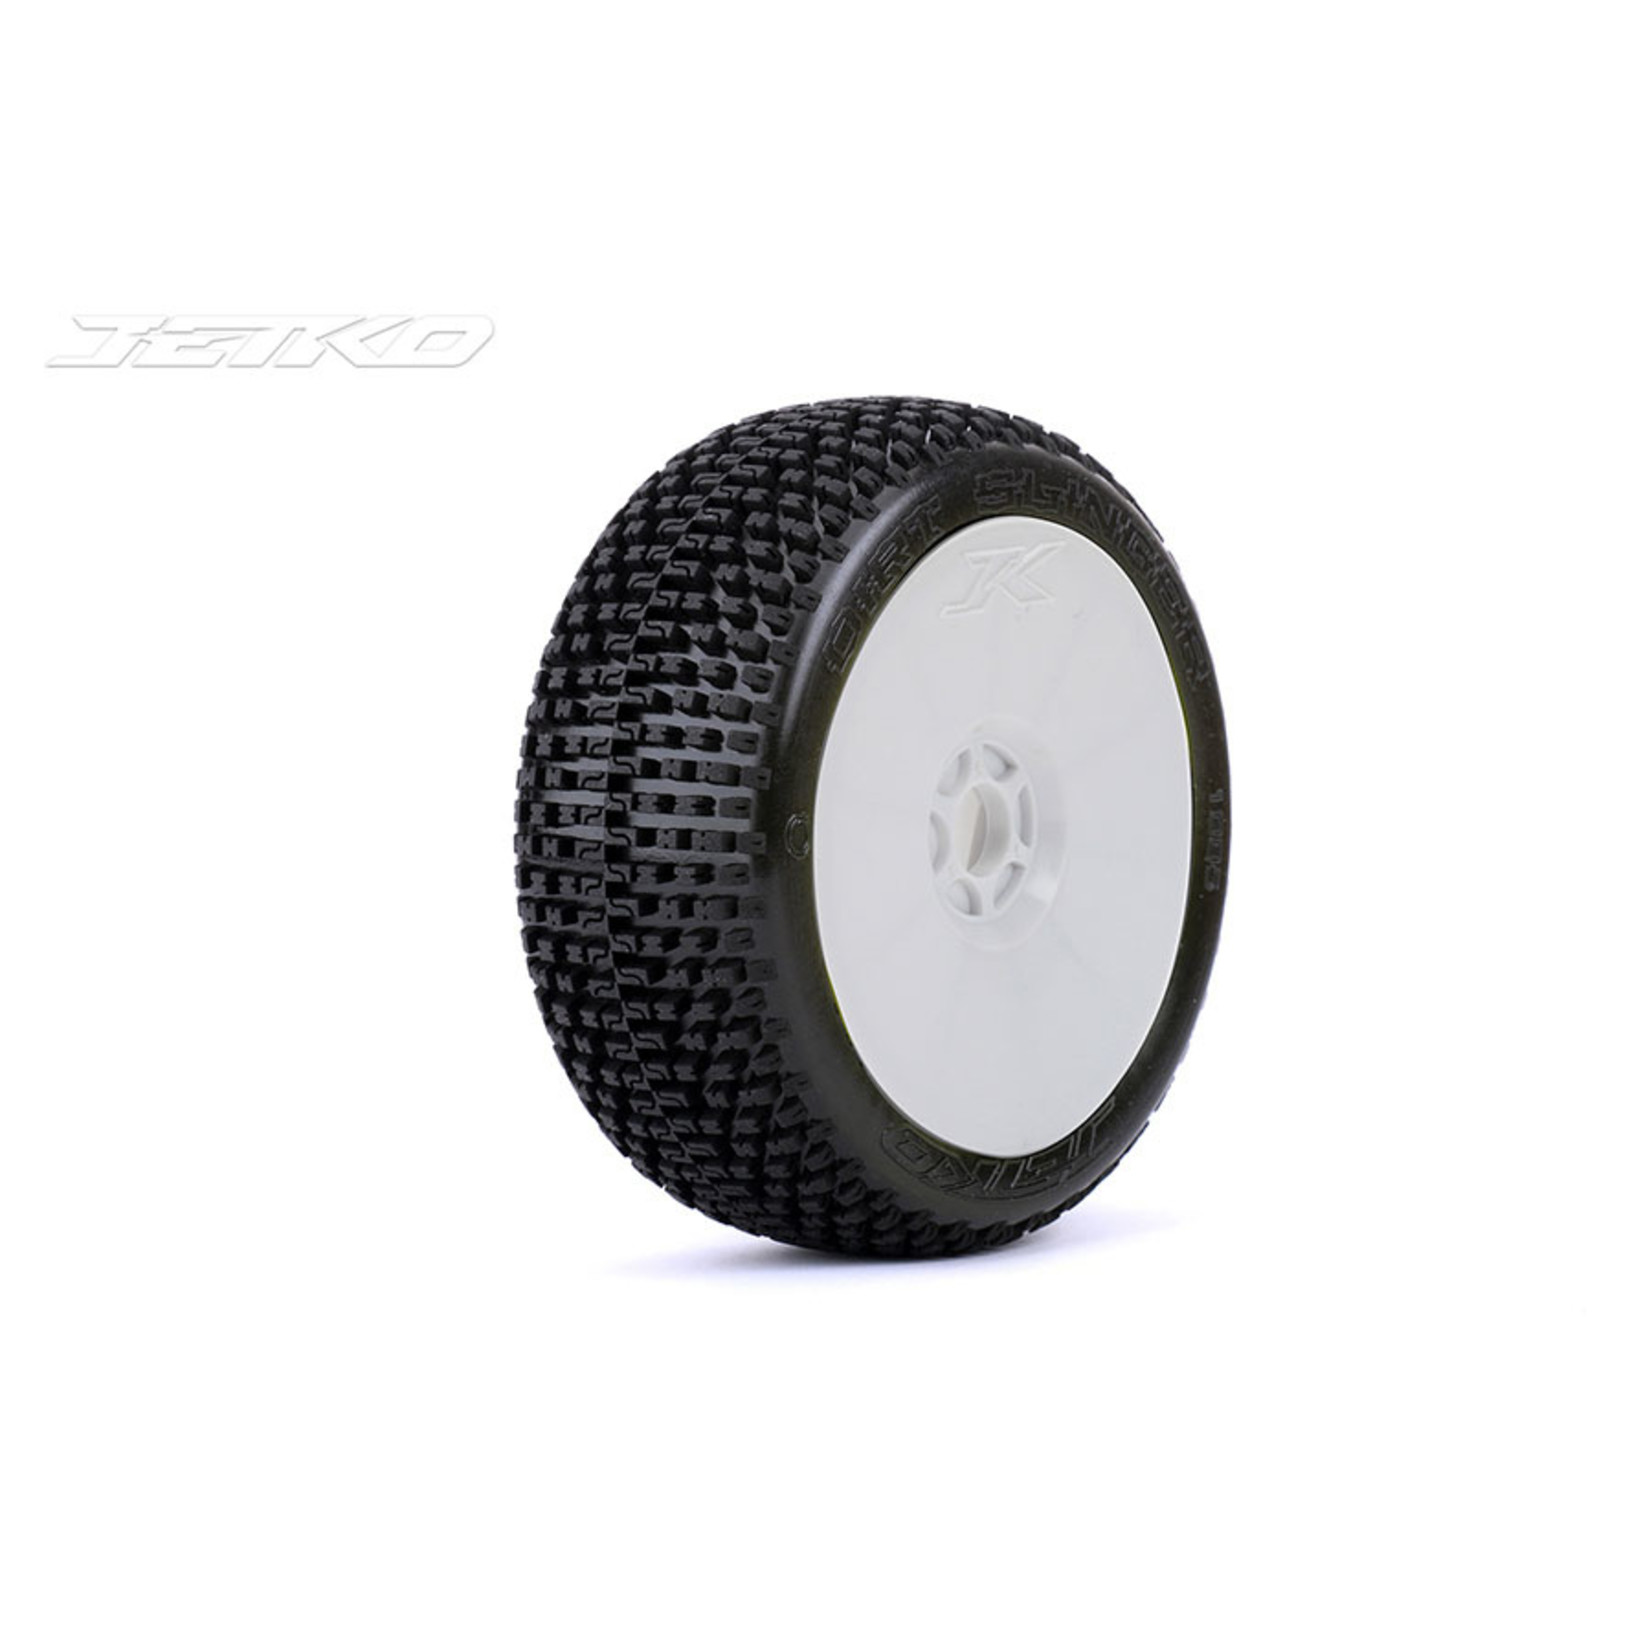 Jetko Tires Jetko Dirt Slinger 1/8 Buggy Pre-Mounted Tires on White Dish Rims (Medium Soft) (2) #1005DWMSG